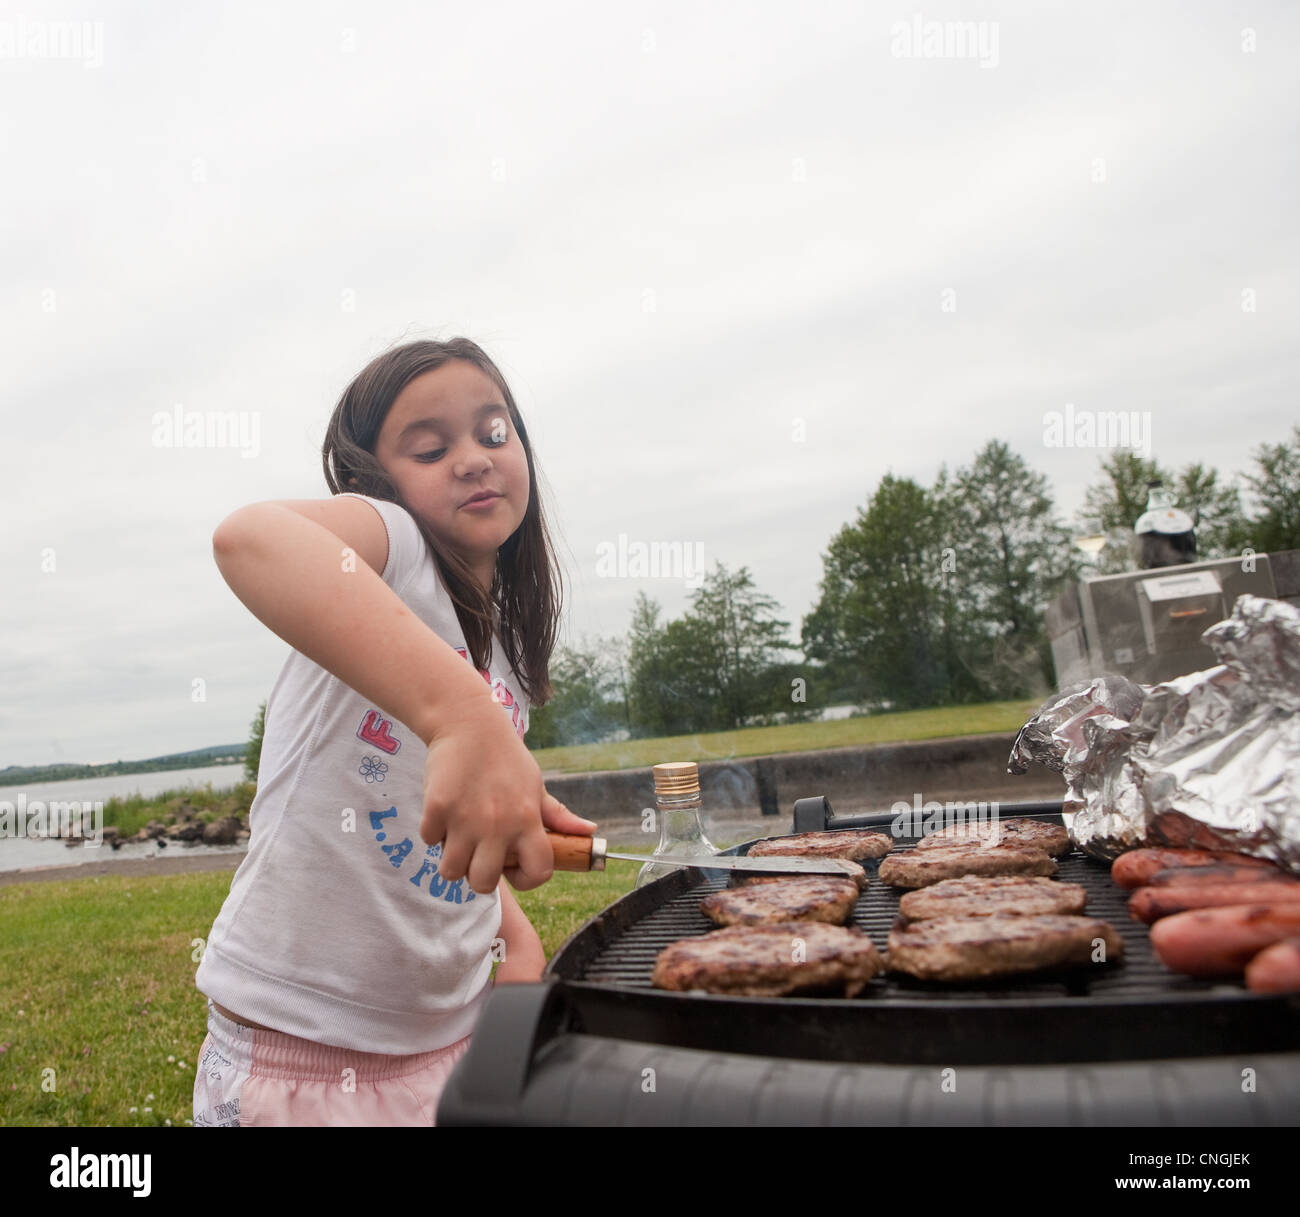 Junges Mädchen Braten Hamburger auf eine Bar b que. Kochen im Freien, essen Fleisch, Herd, Gasbrenner, Würstchen, Barbie, Sommer, outdoor, ute Stockfoto